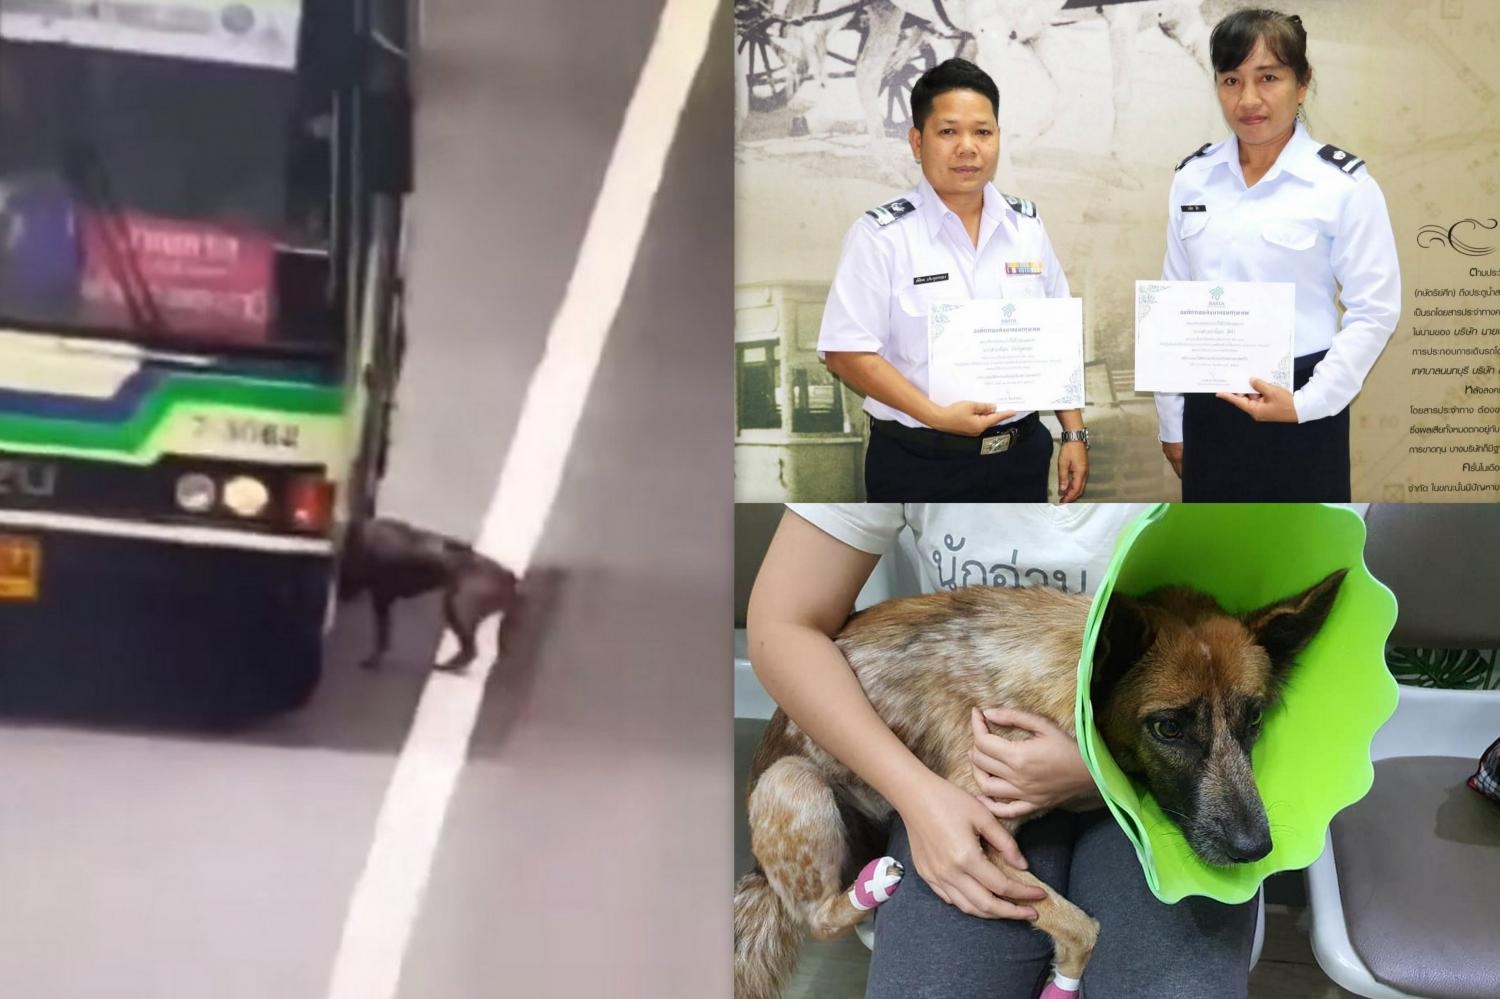 ขสมก.ชื่นชมมอบเงิน 2 พัน พนง.รถเมล์ช่วยสุนัขหลง ล่าสุดอาการปลอดภัย